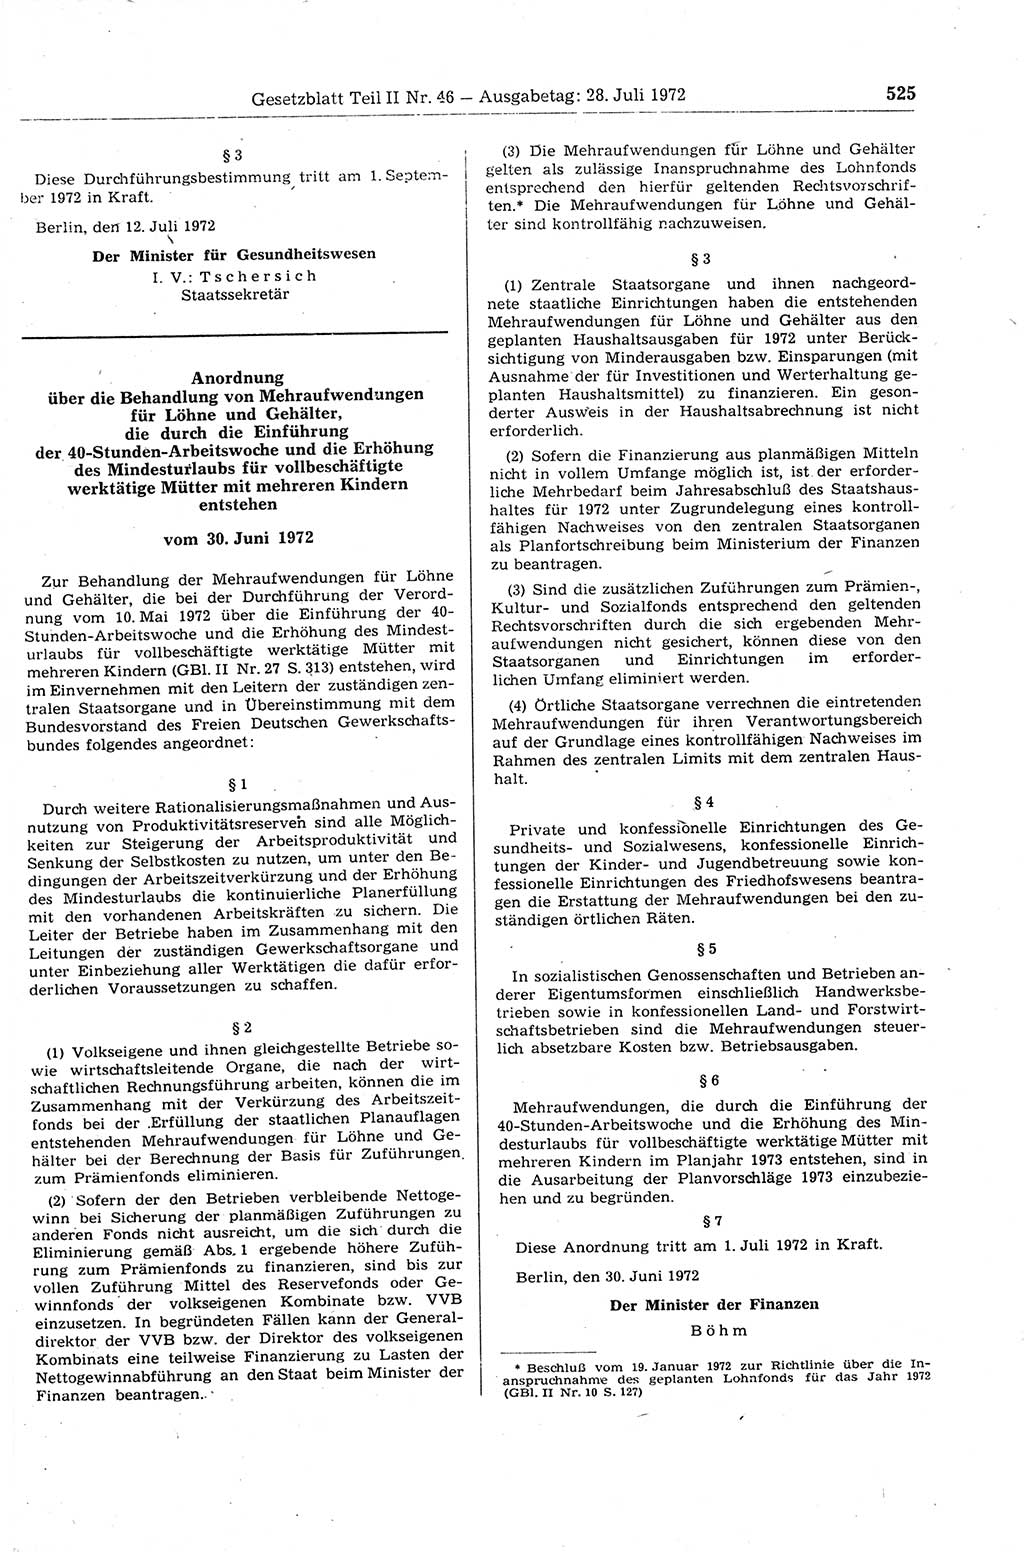 Gesetzblatt (GBl.) der Deutschen Demokratischen Republik (DDR) Teil ⅠⅠ 1972, Seite 525 (GBl. DDR ⅠⅠ 1972, S. 525)